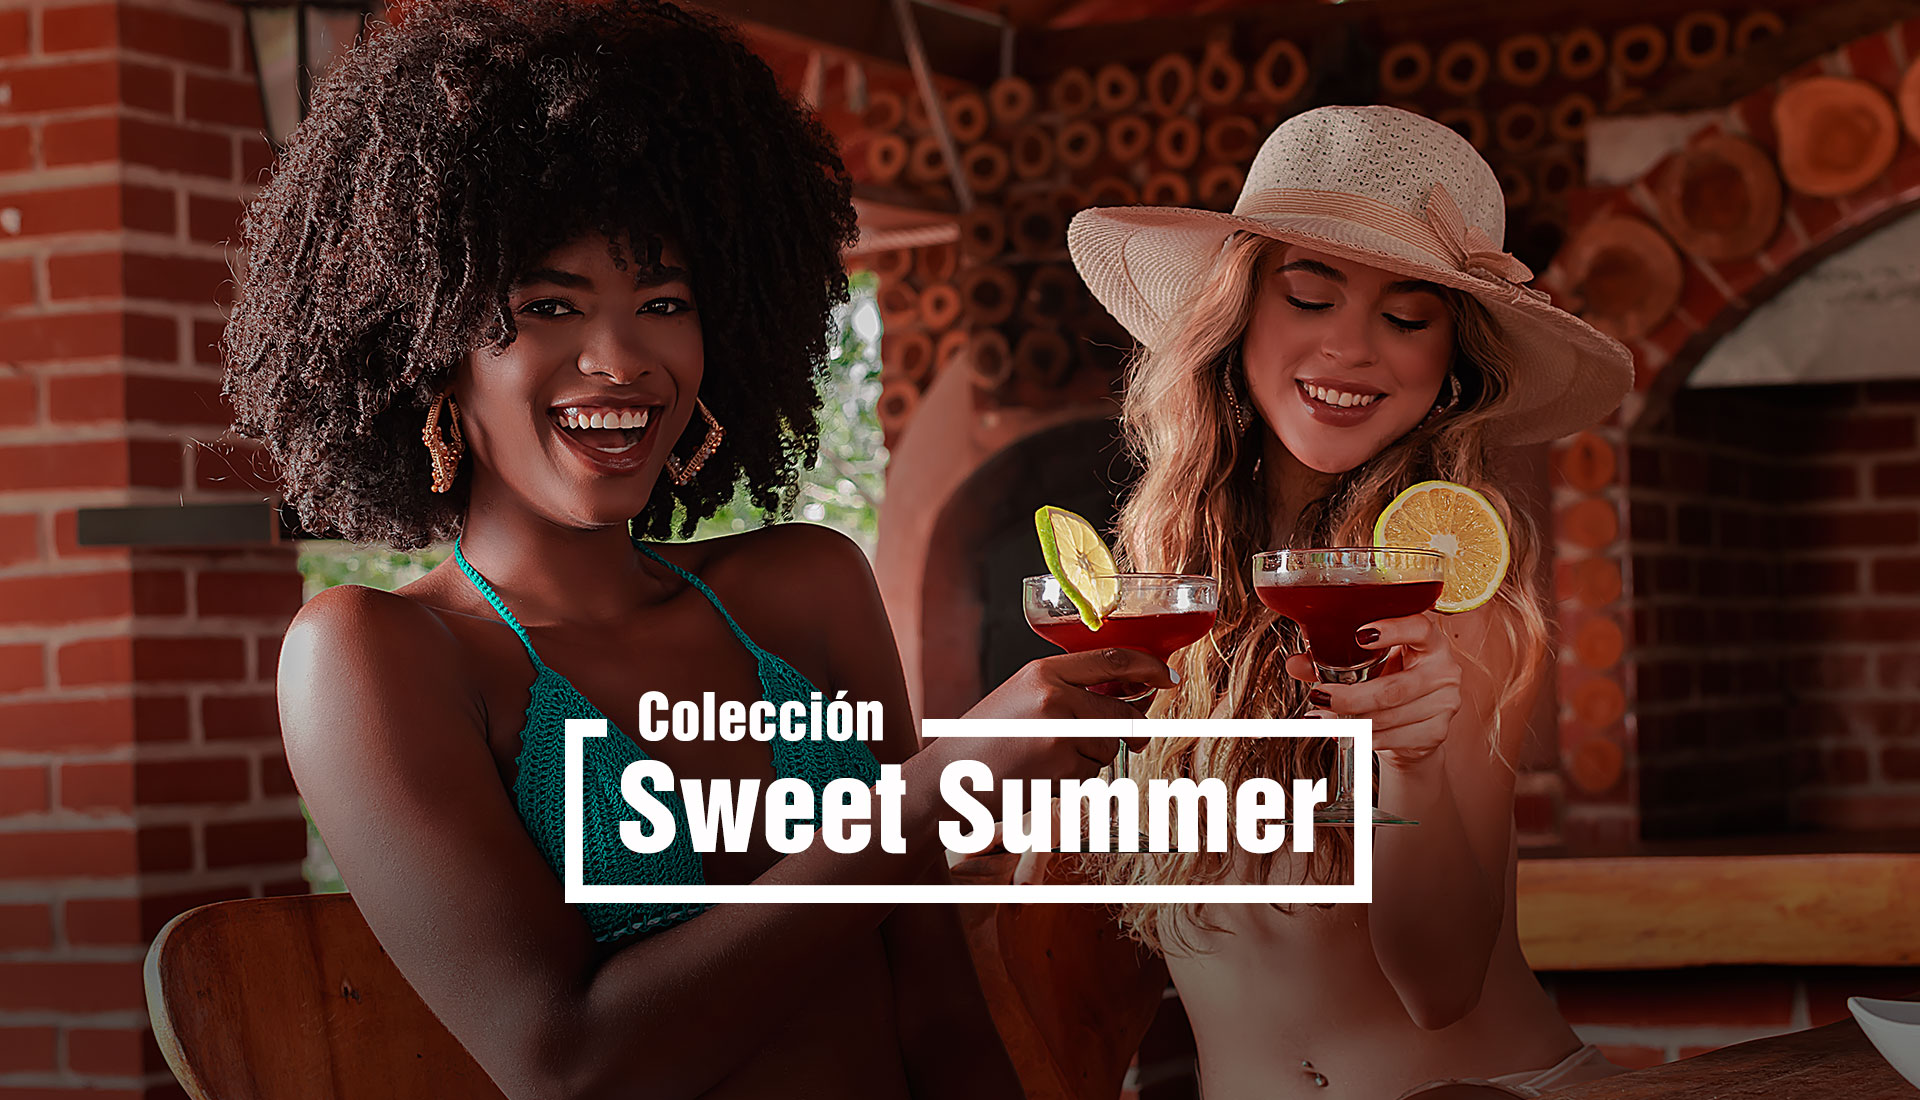 Colección sweet summer